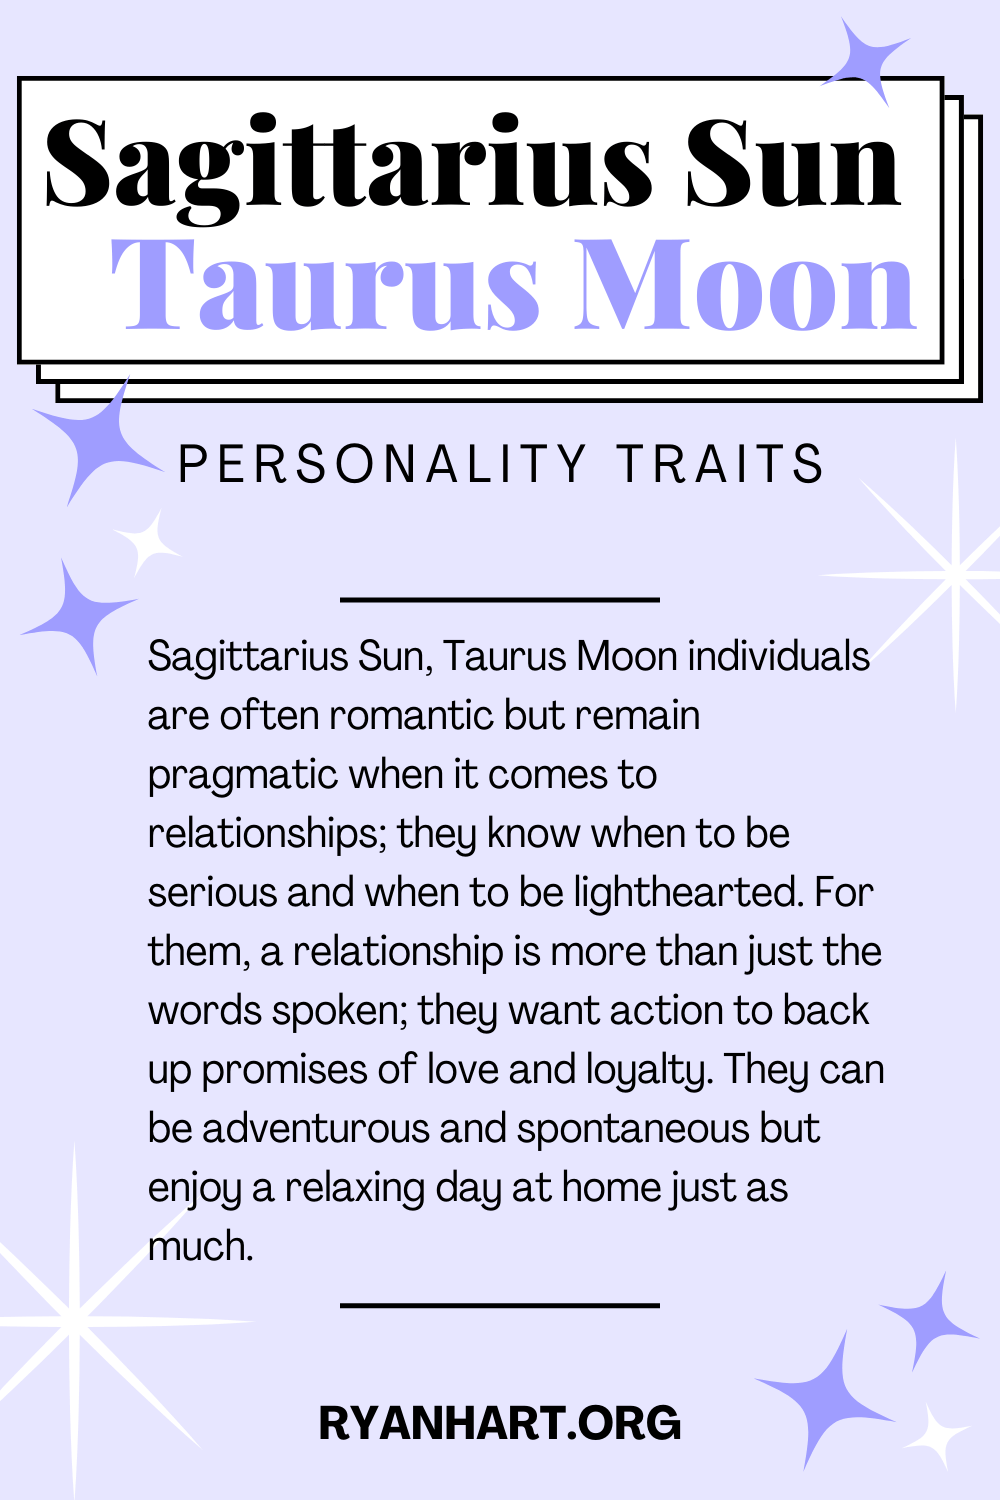 Sagittarius Sun Taurus Moon Description